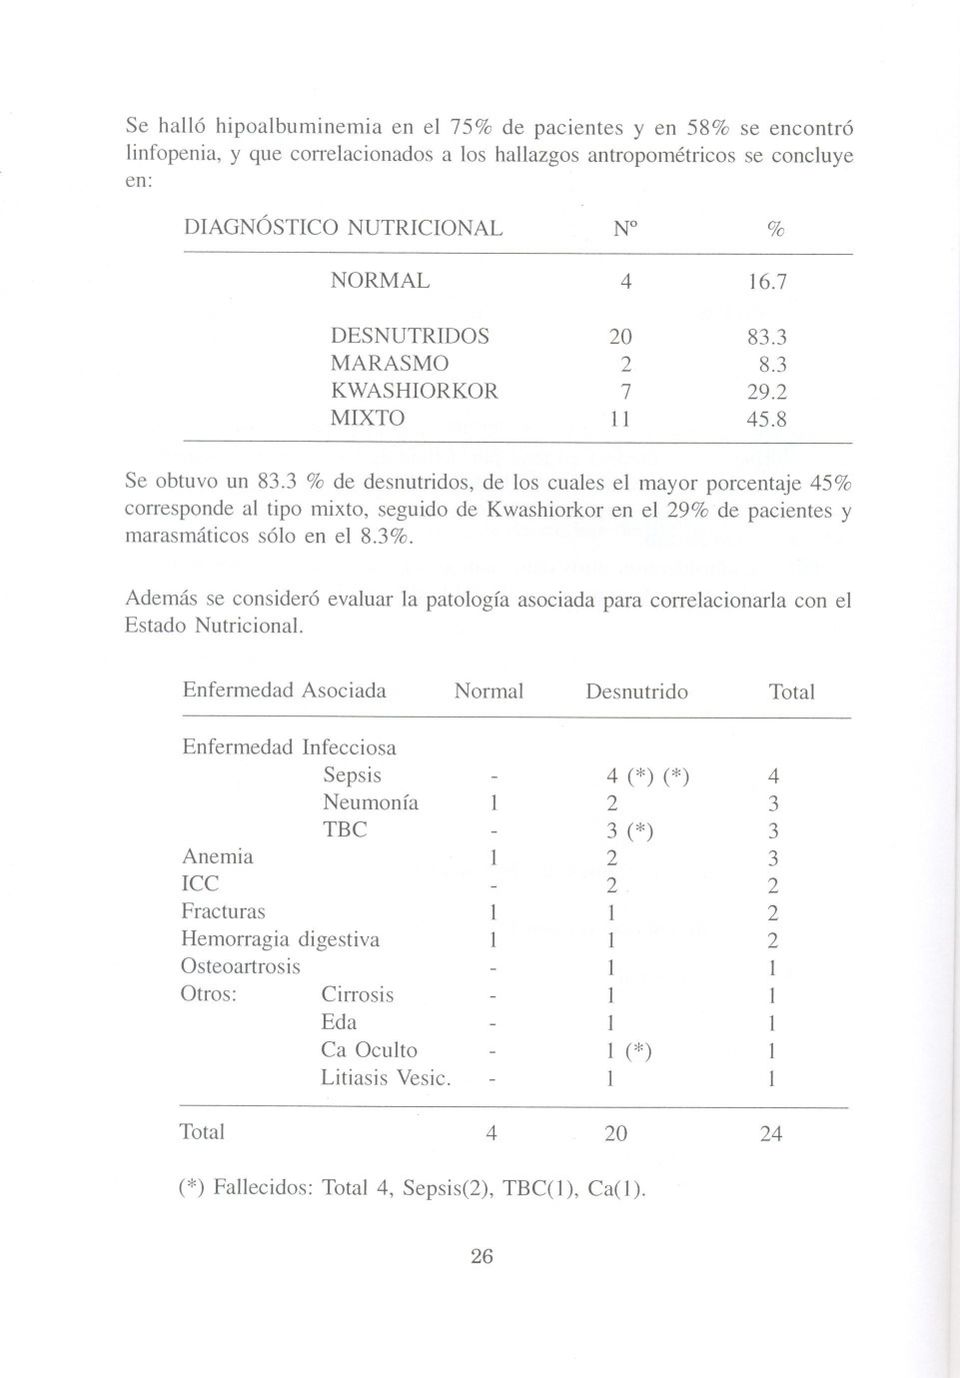 3 % de desnutridos, de los cuales el mayor porcentaje 45% corresponde al tipo mixto, seguido de Kwashiorkor en el 29% de pacientes y marasmáticos sólo en el 8.3%.